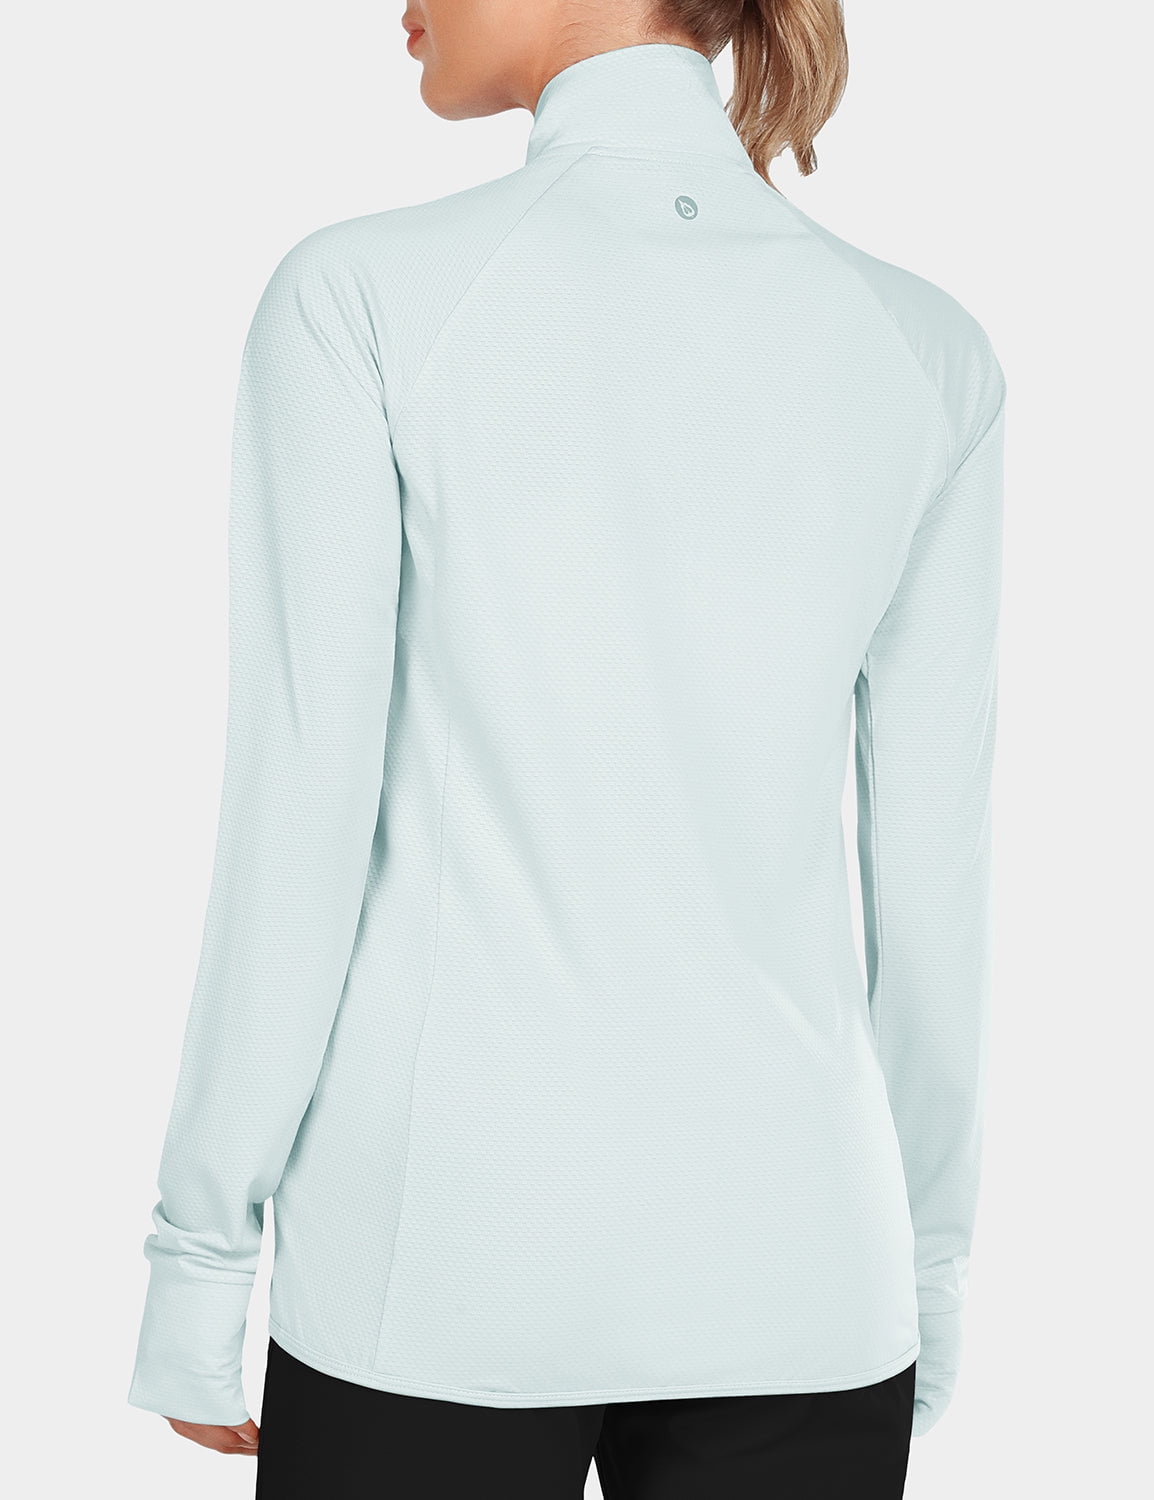 Jackets Lightweight Full Zip Sun Shirts Running Long Sleeve Zip Pockets Outdoor BALEAF Women's UPF 50 